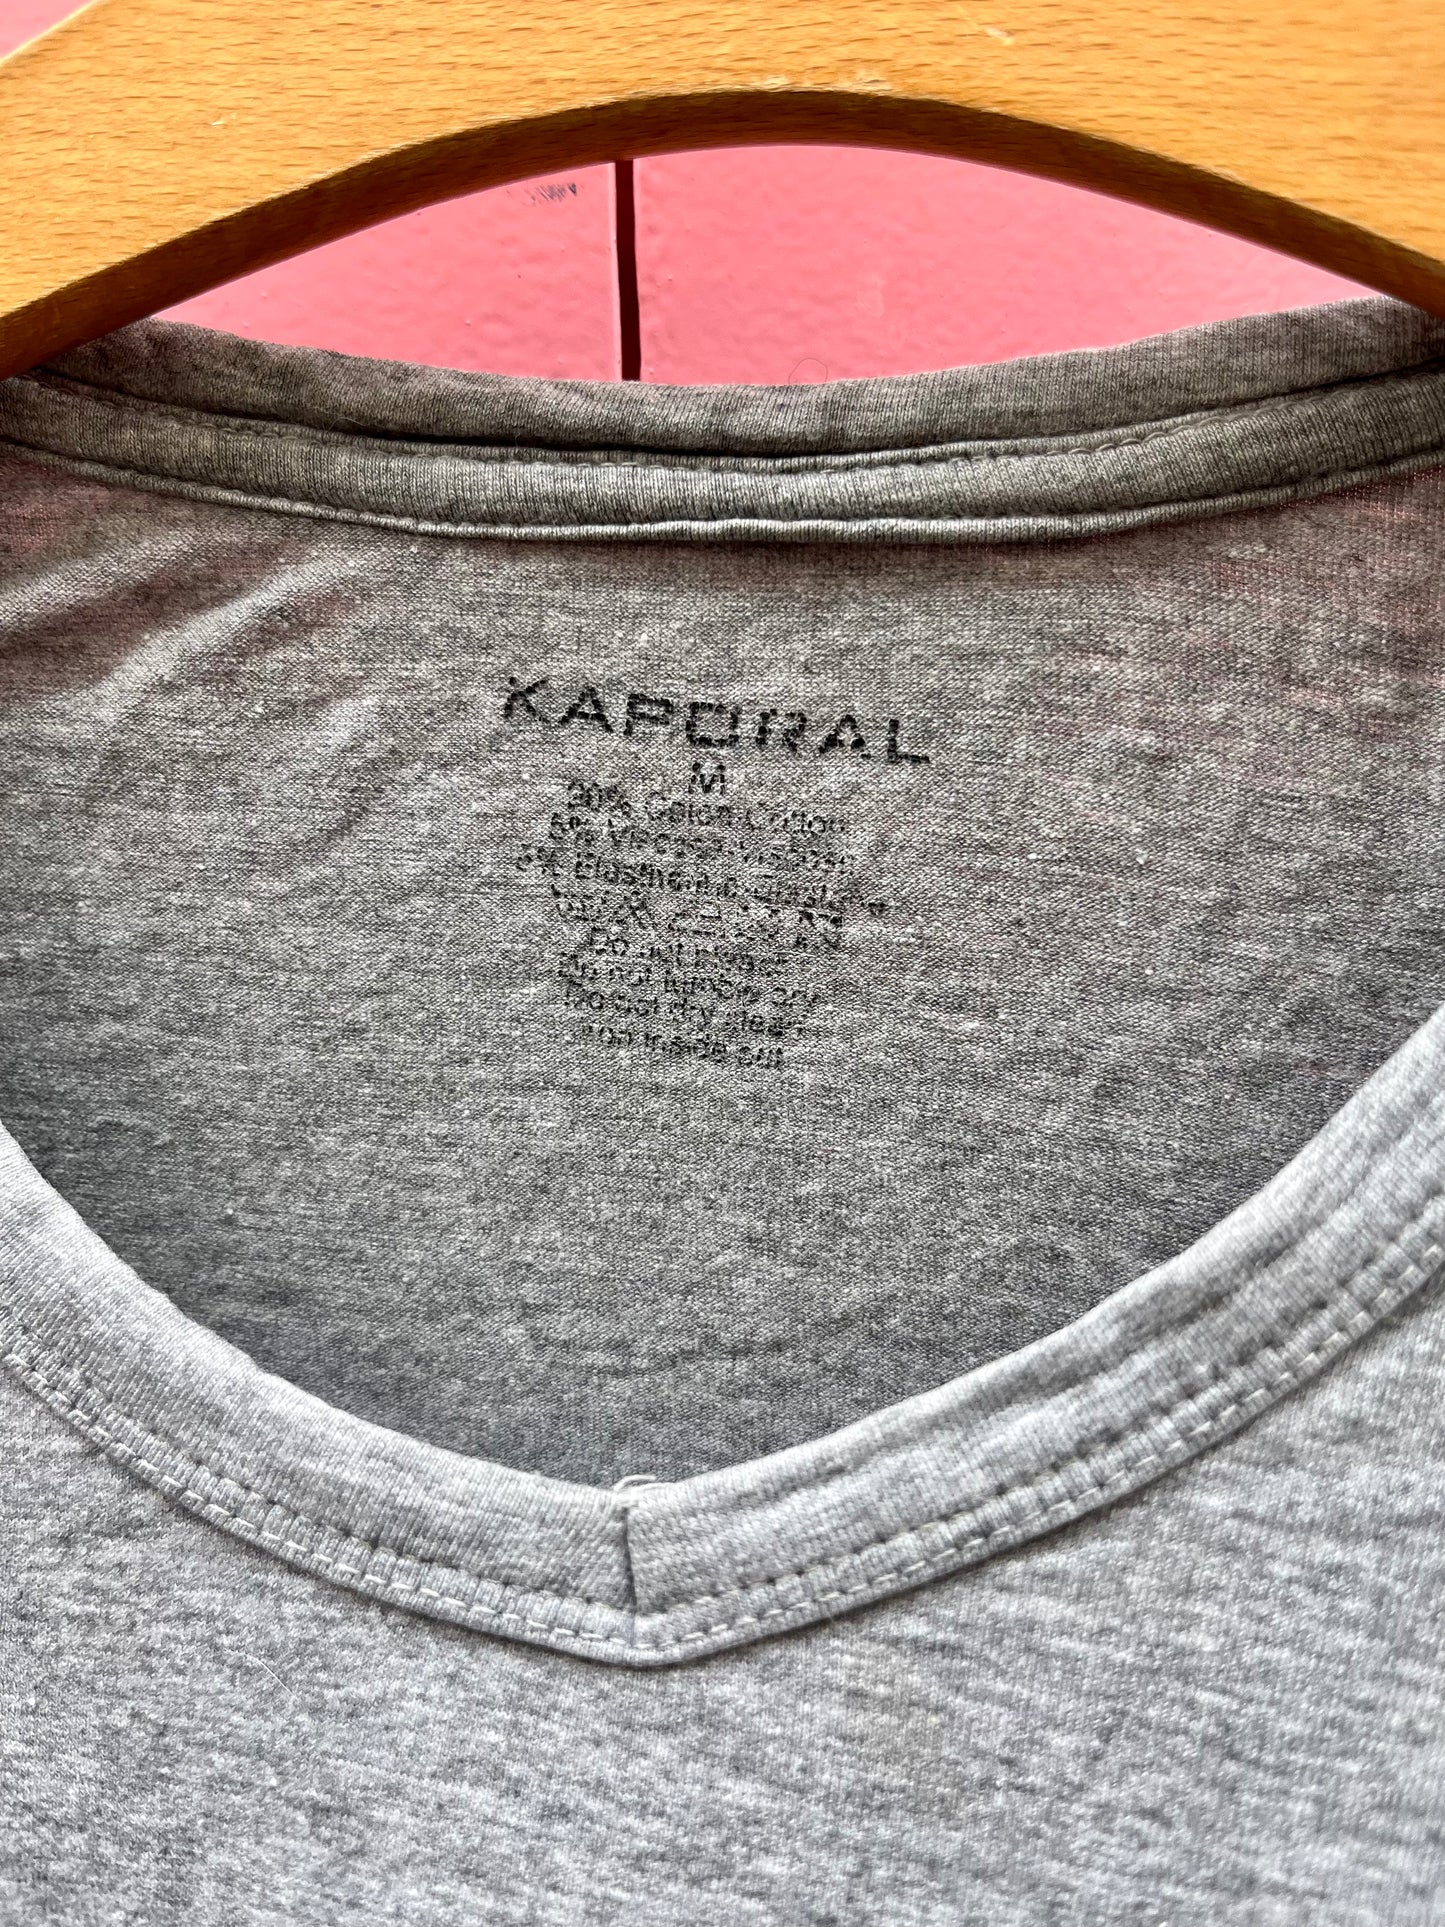 Le t-shirt, KAPORAL, taille S